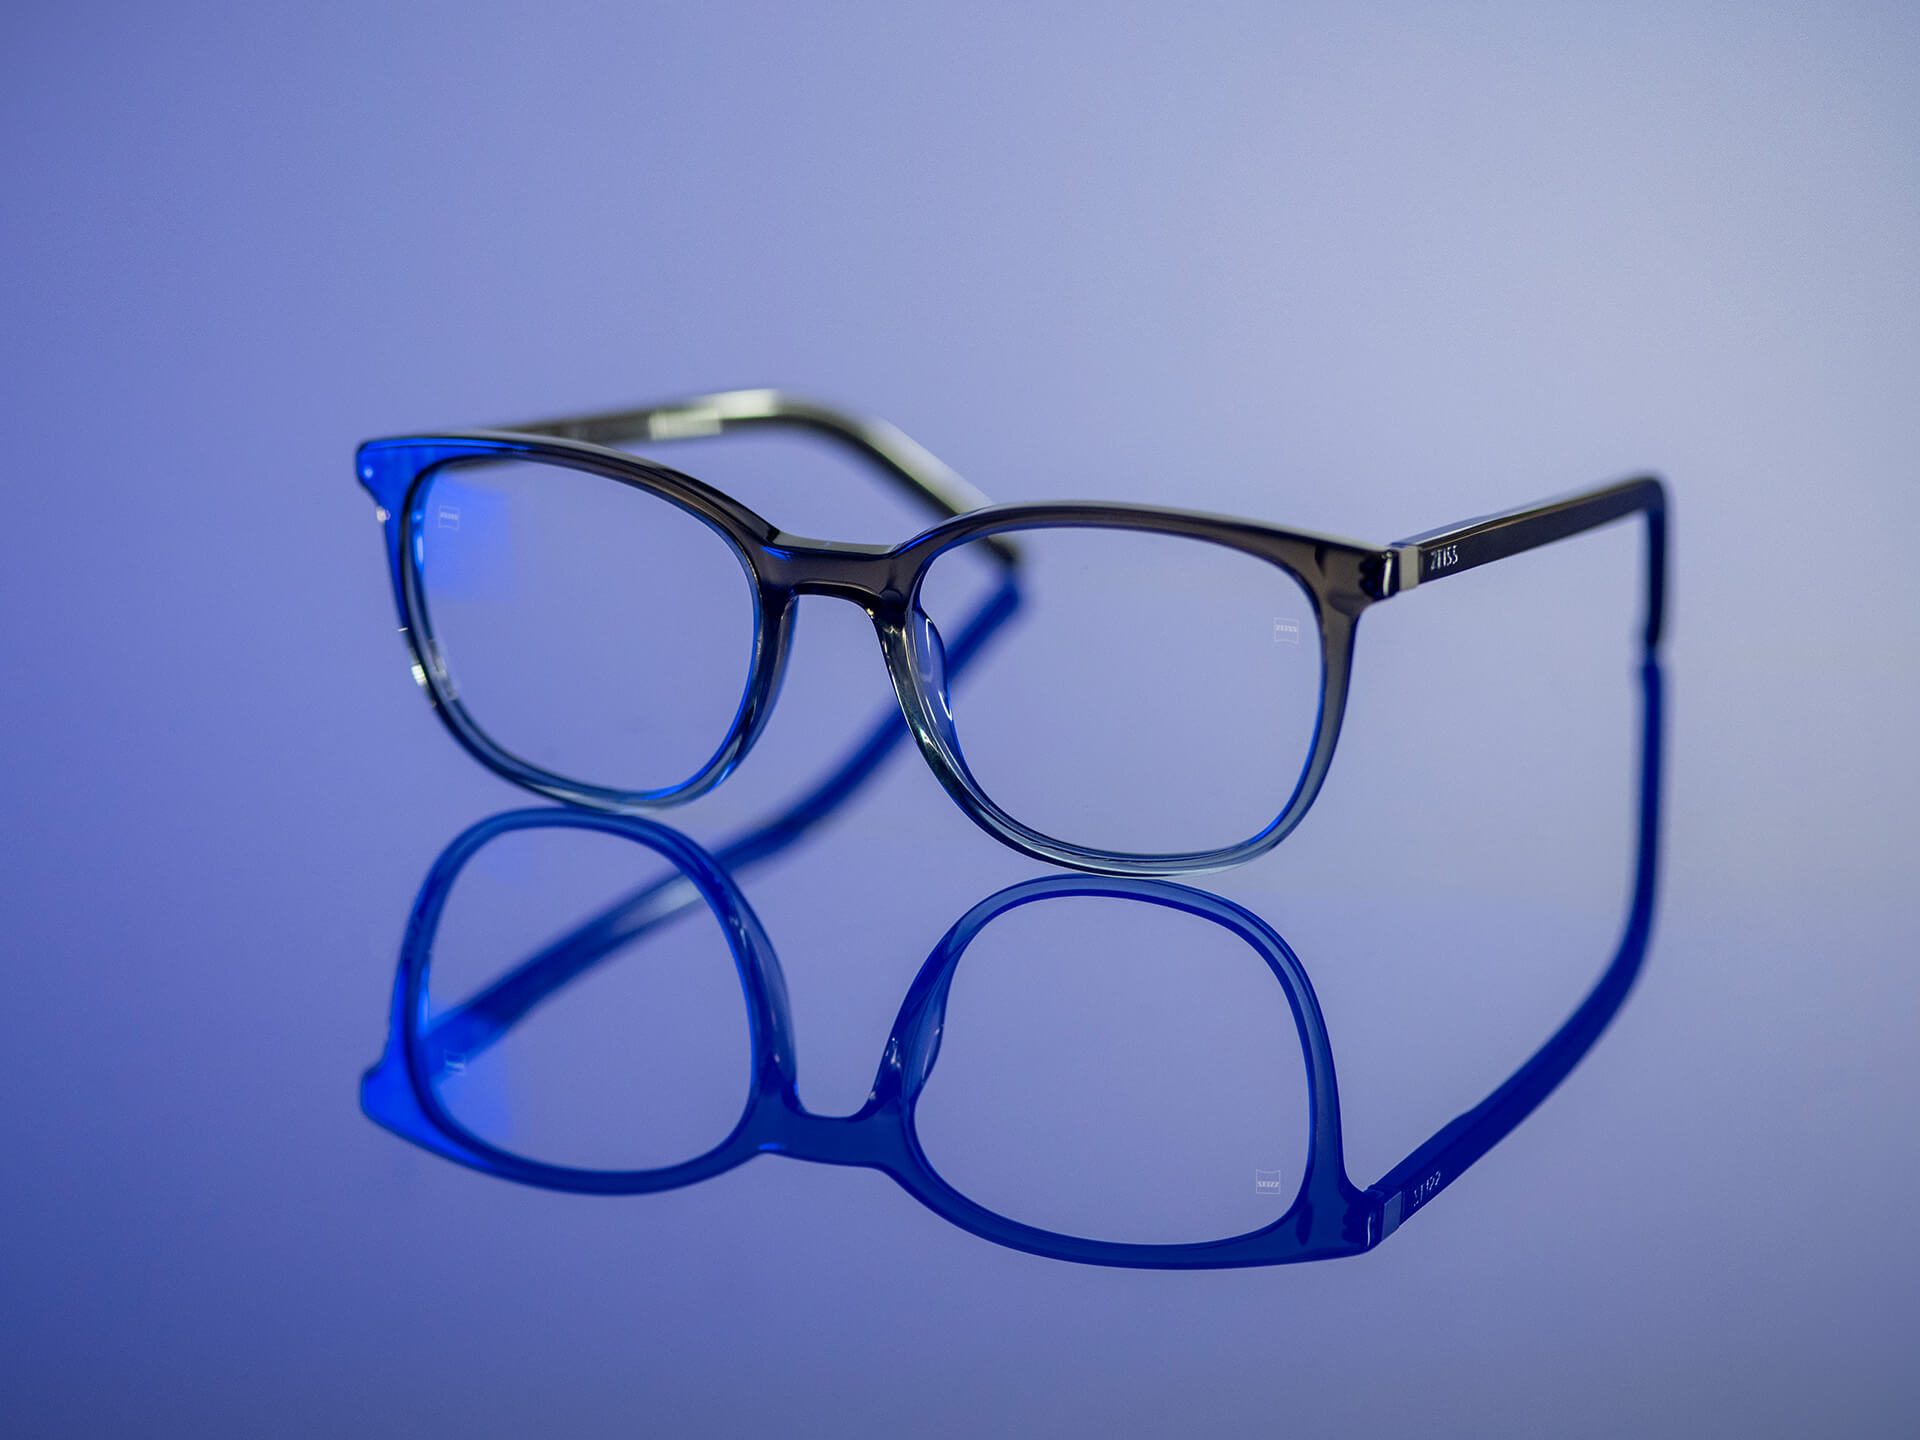 Gafas que se pueden ver con luz azulada y que disponen de lentes ZEISS con material de lente BlueGuard. Solo es visible un reflejo azulado muy reducido en las lentes.